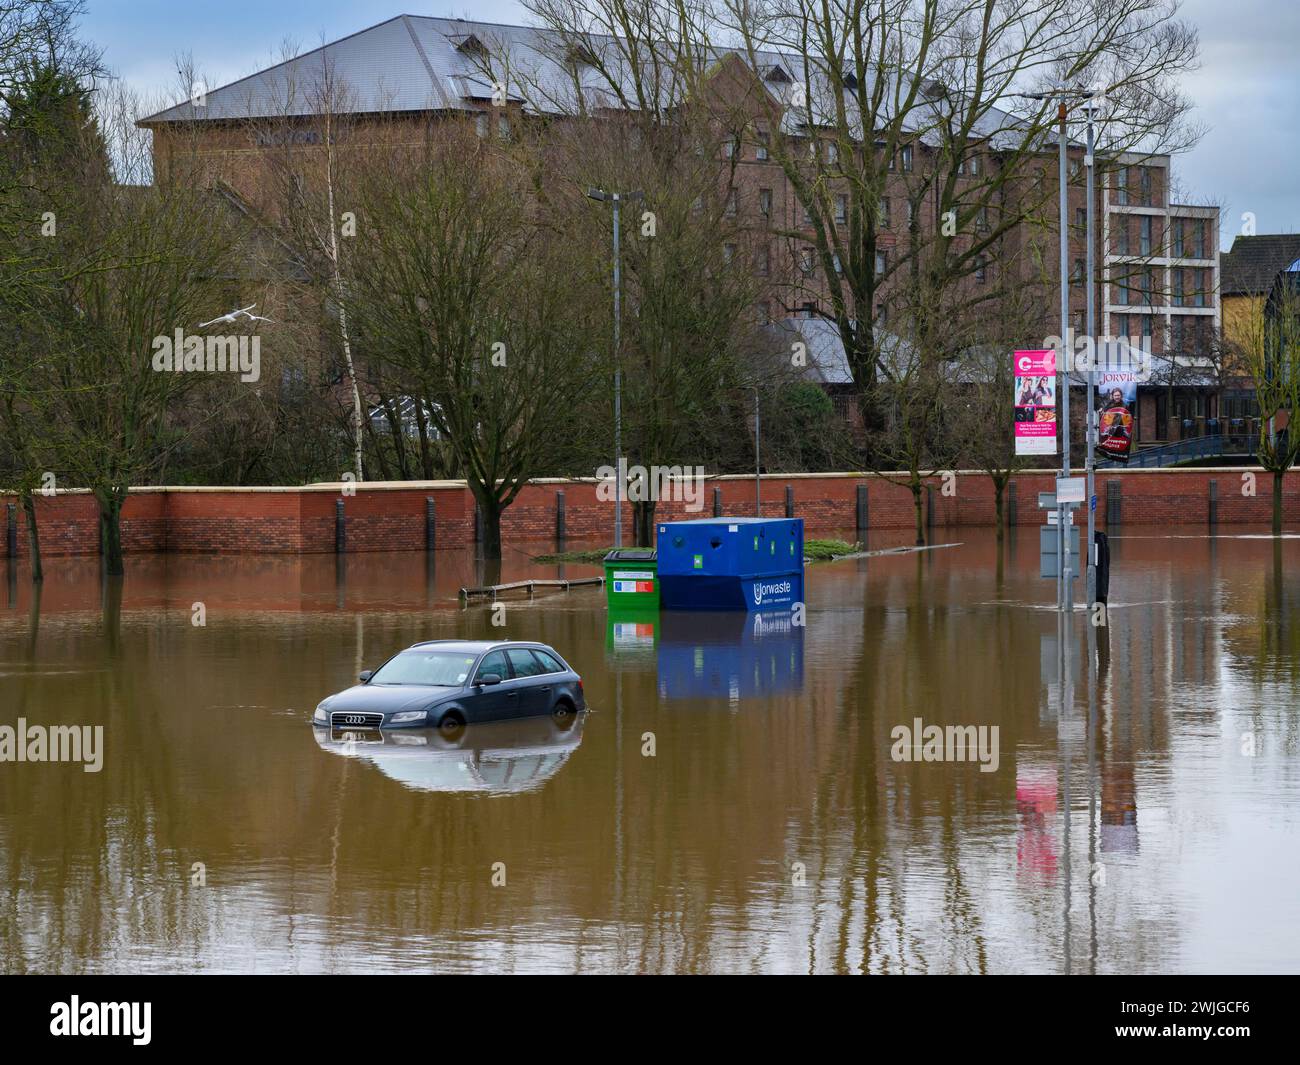 River Ouse platzte Ufer nach starkem Regen (Hochwasser, Parkplatz am Fluss St George's Field überschwemmt) - York, North Yorkshire, England Großbritannien. Stockfoto